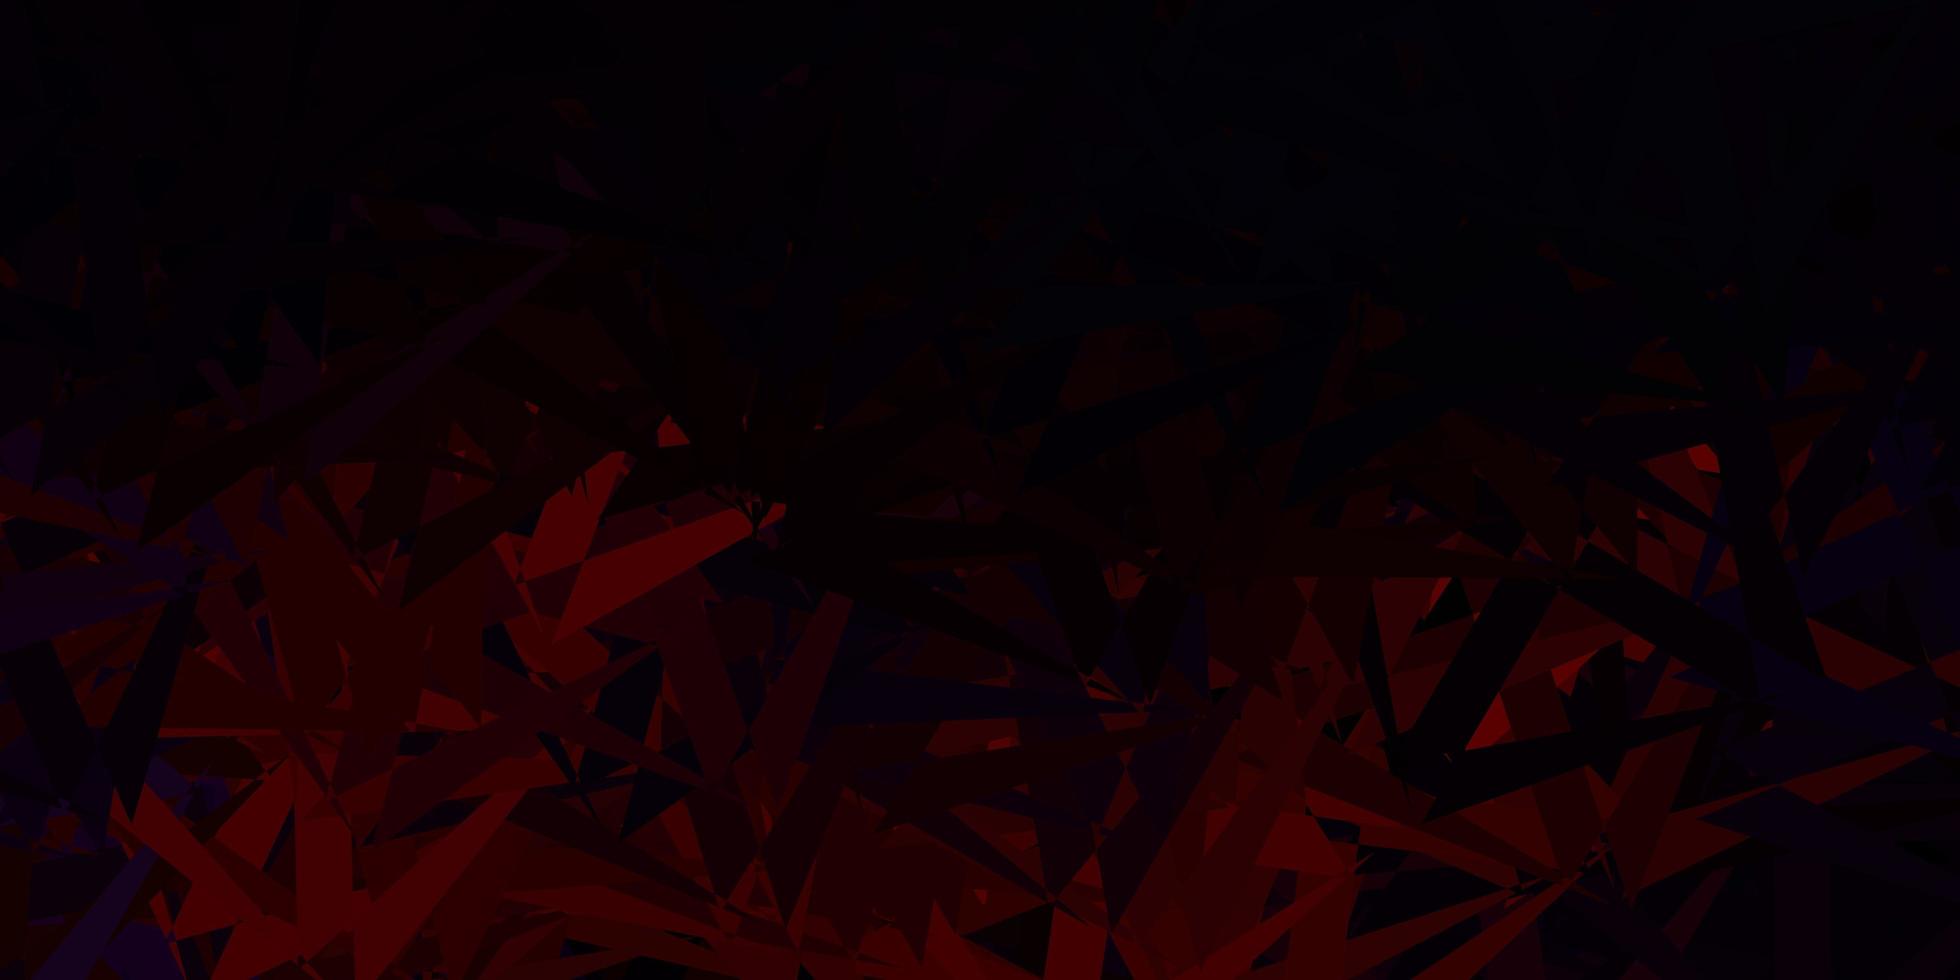 sfondo vettoriale rosso scuro con forme poligonali